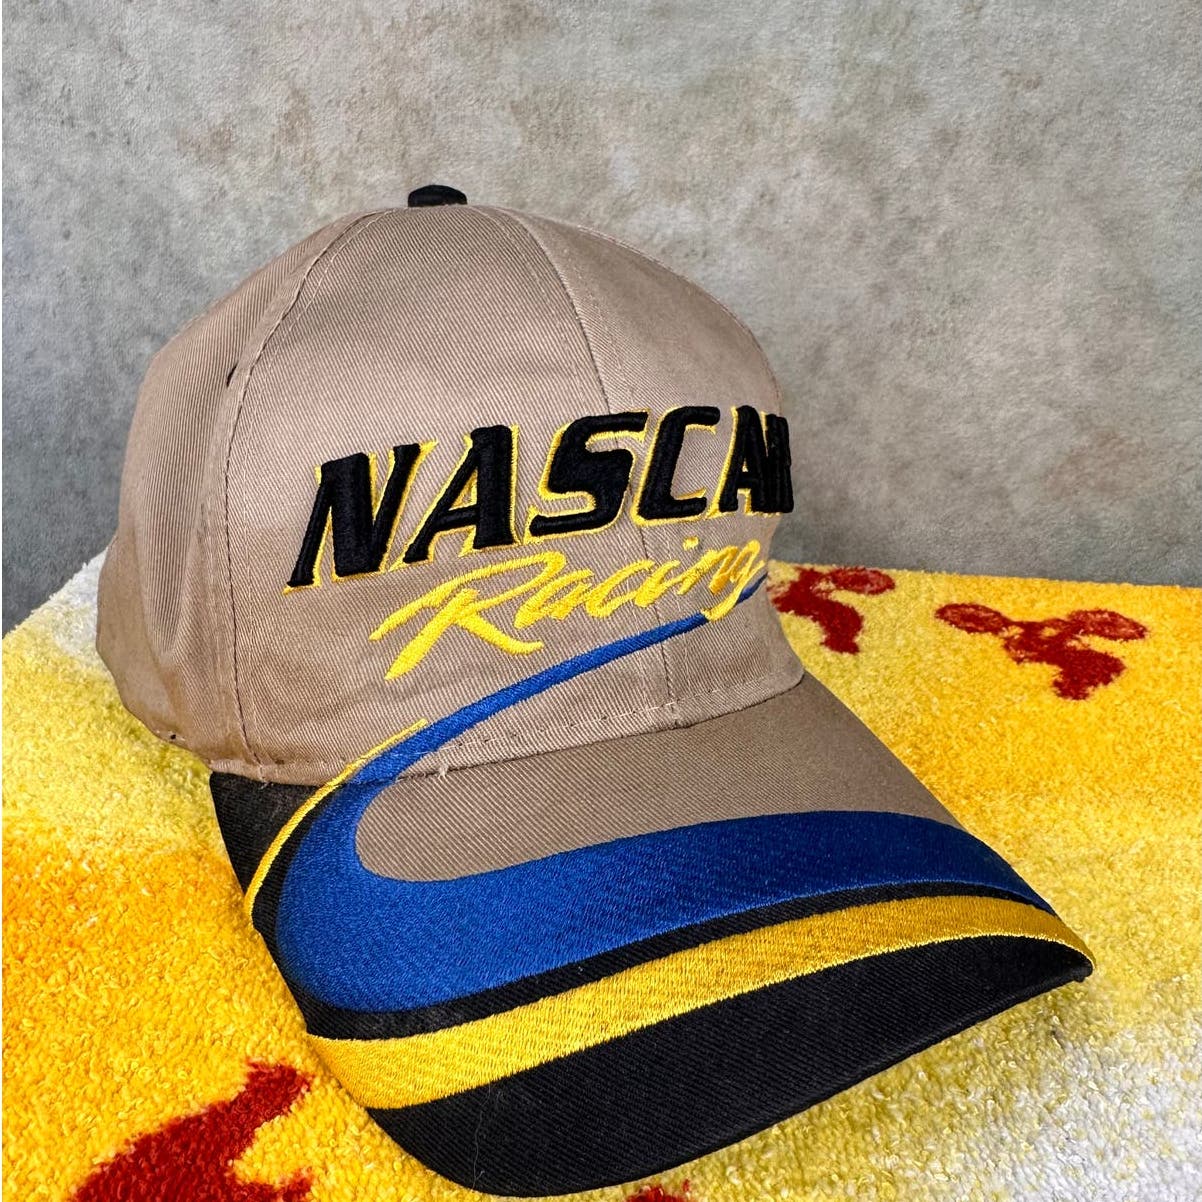 Vintage Nascar Racing Snapback Hat OS